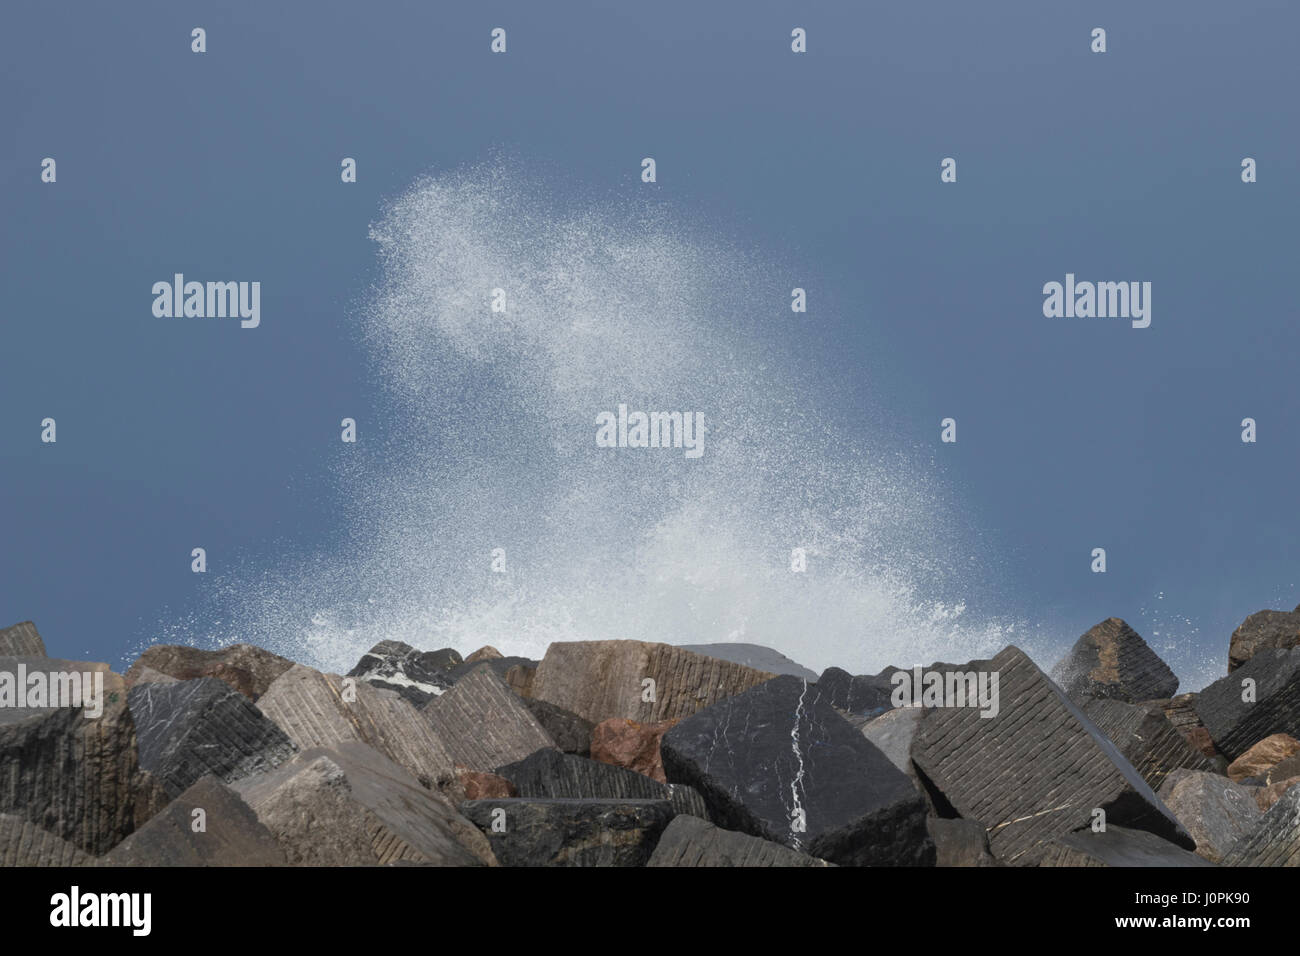 Weißer Schaum aus einer Welle, die in der Luft (San Sebastian, Spanien) 2017 ausgesetzt. Stockfoto